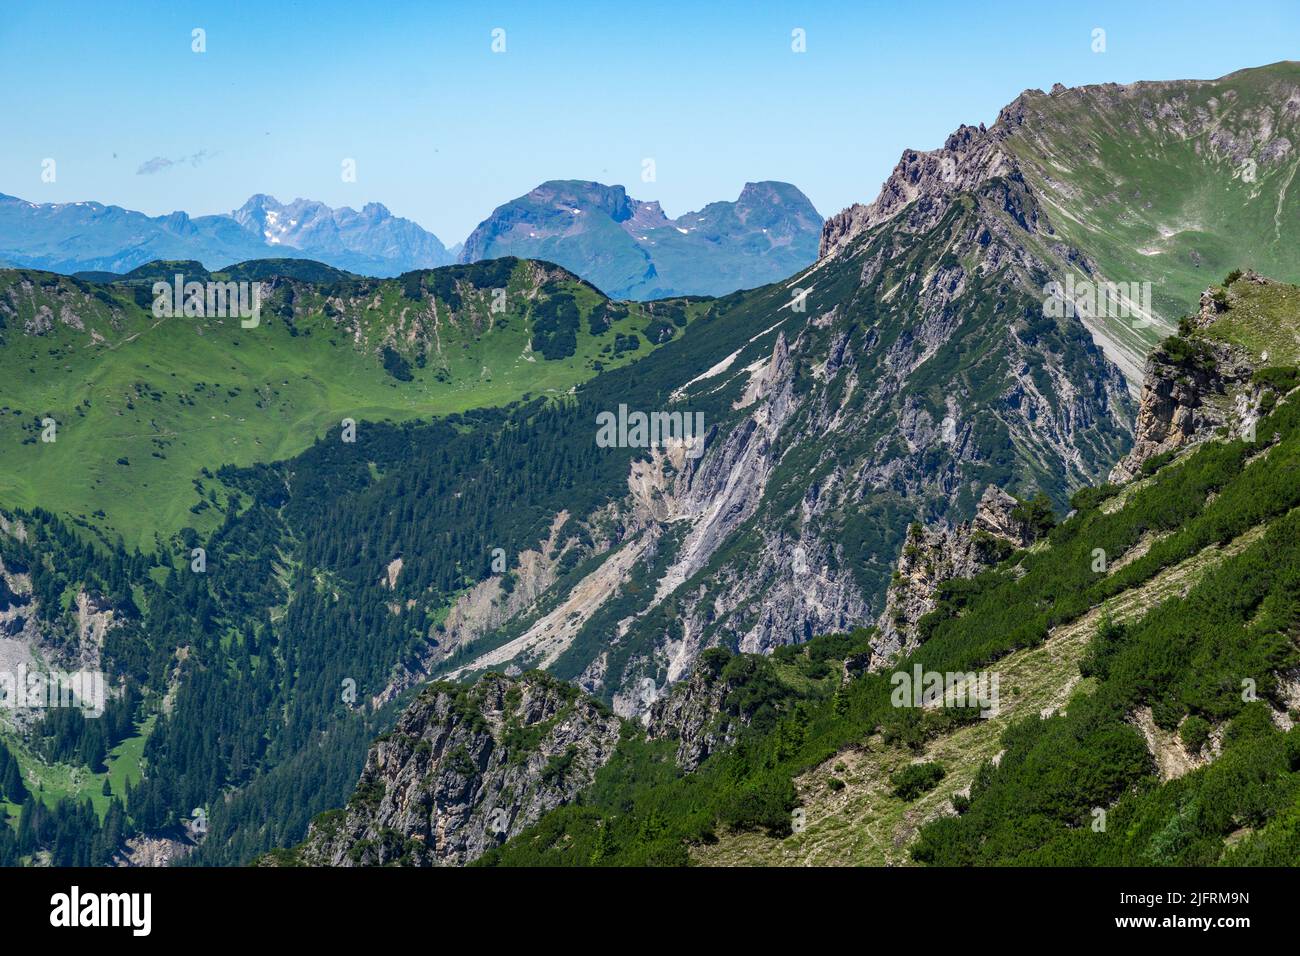 Panorama vom Nenzinger Himmel und den Bergen von Lichtenstein. alpine Wiesen mit verschiedensten farbigen Blumen und dunkle Wälder an den Berghängen. Foto Stock